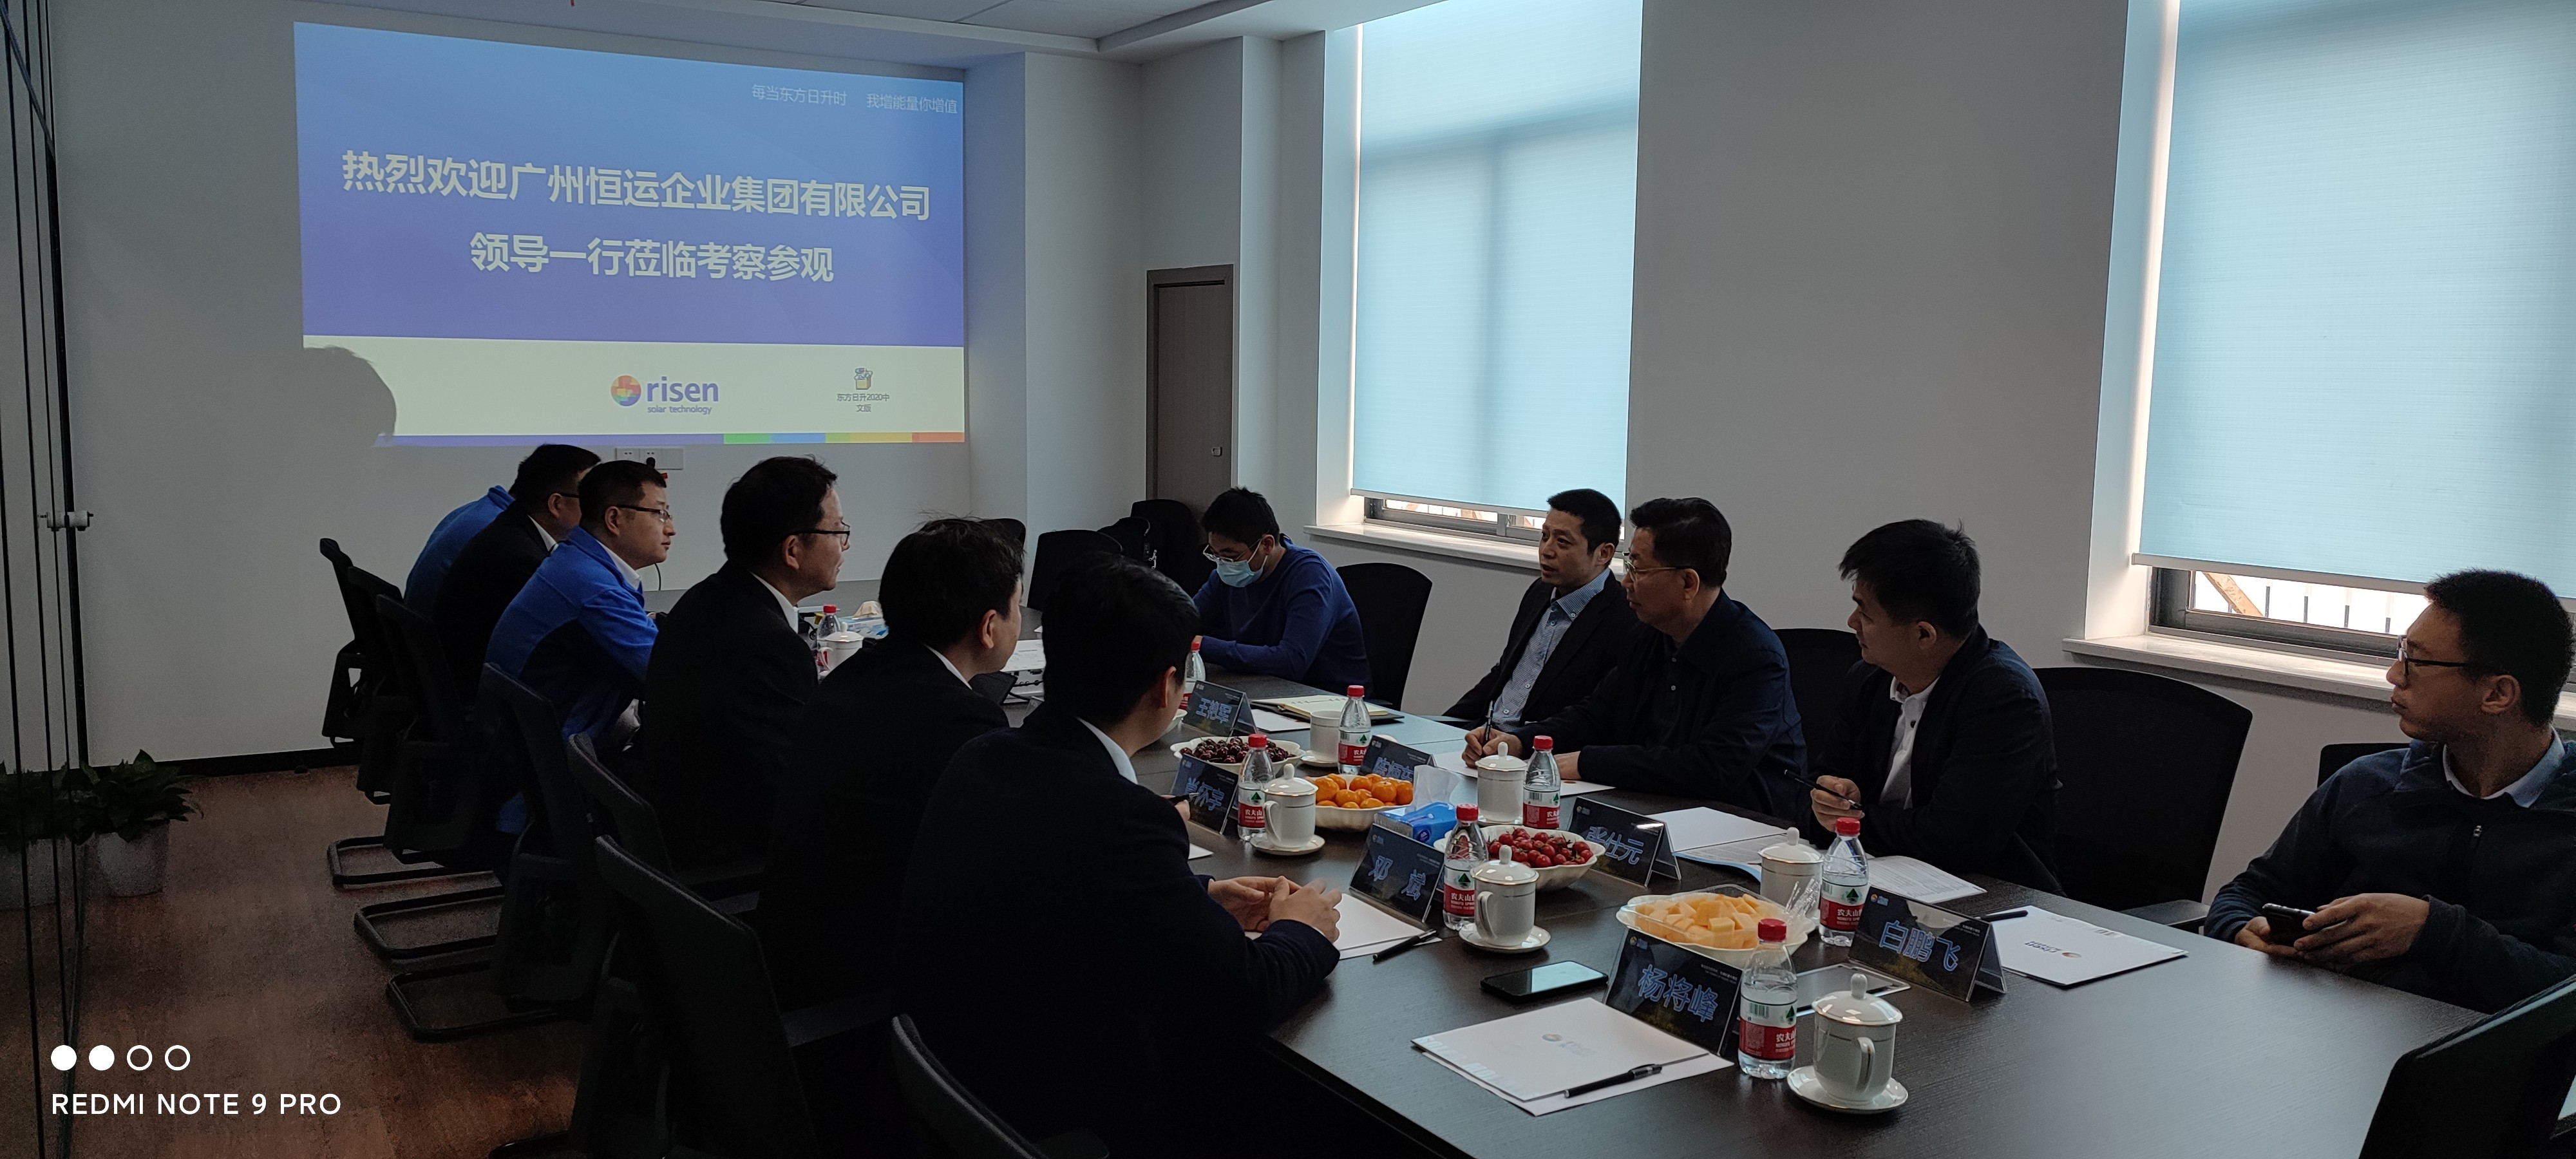 广州恒运企业集团股份有限公司来访东方日升洽谈战略合作